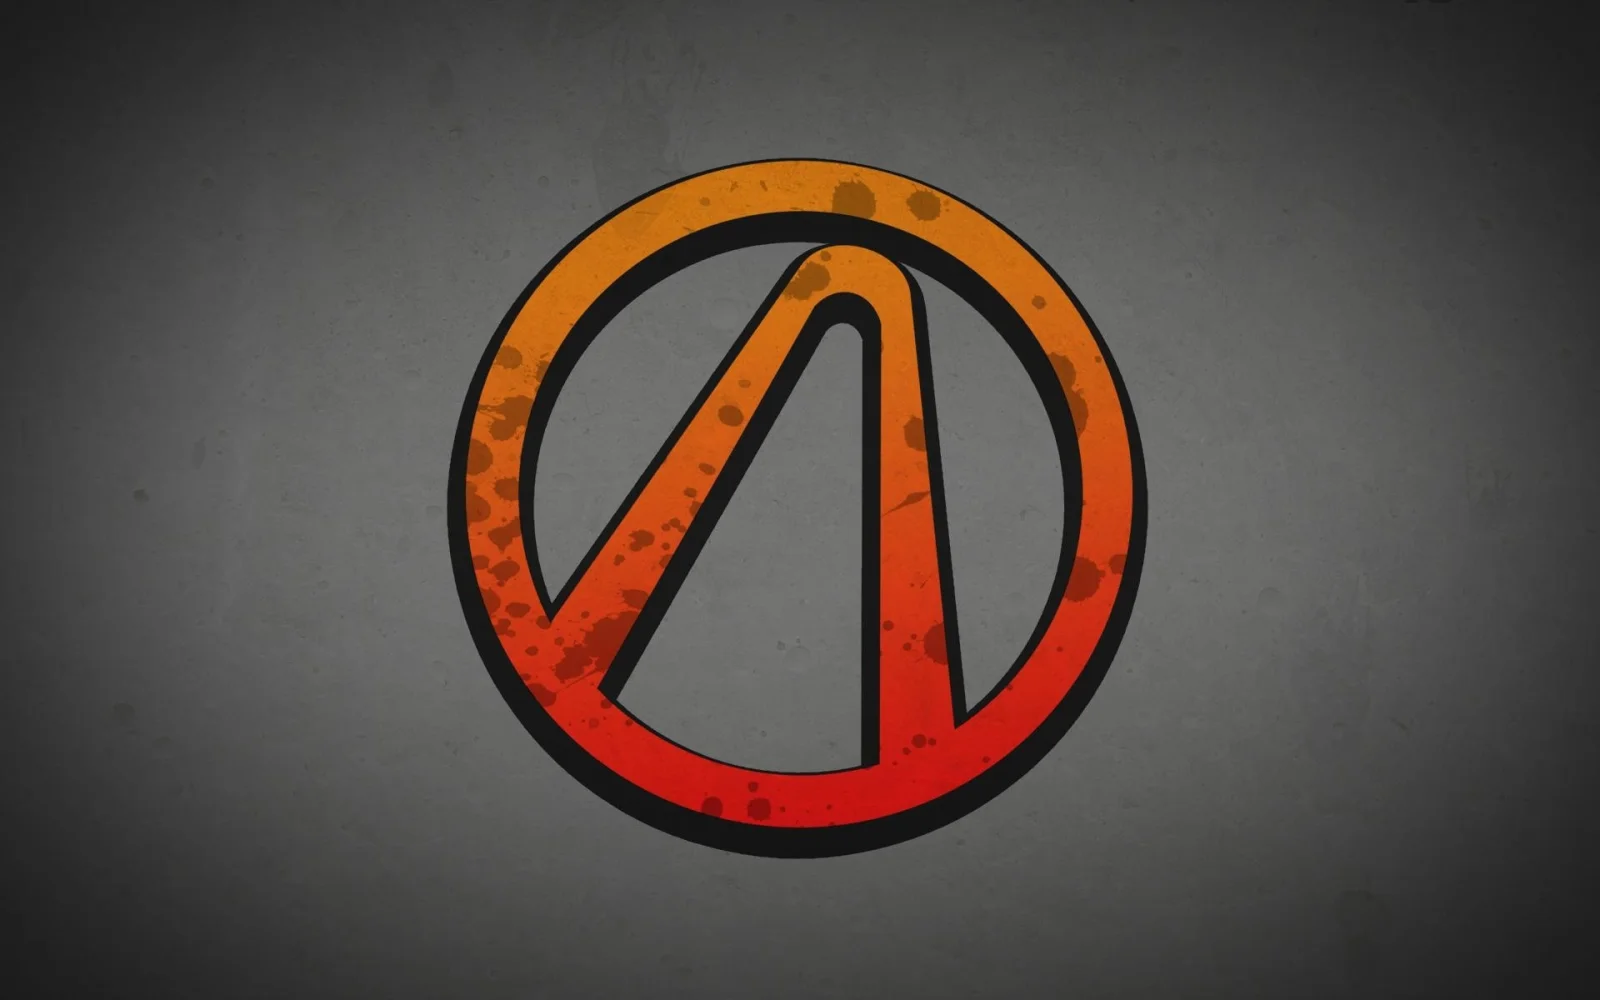 Gearsbox 暗示3月28日的 PAX 展上可能有《无主之地3》的新动静